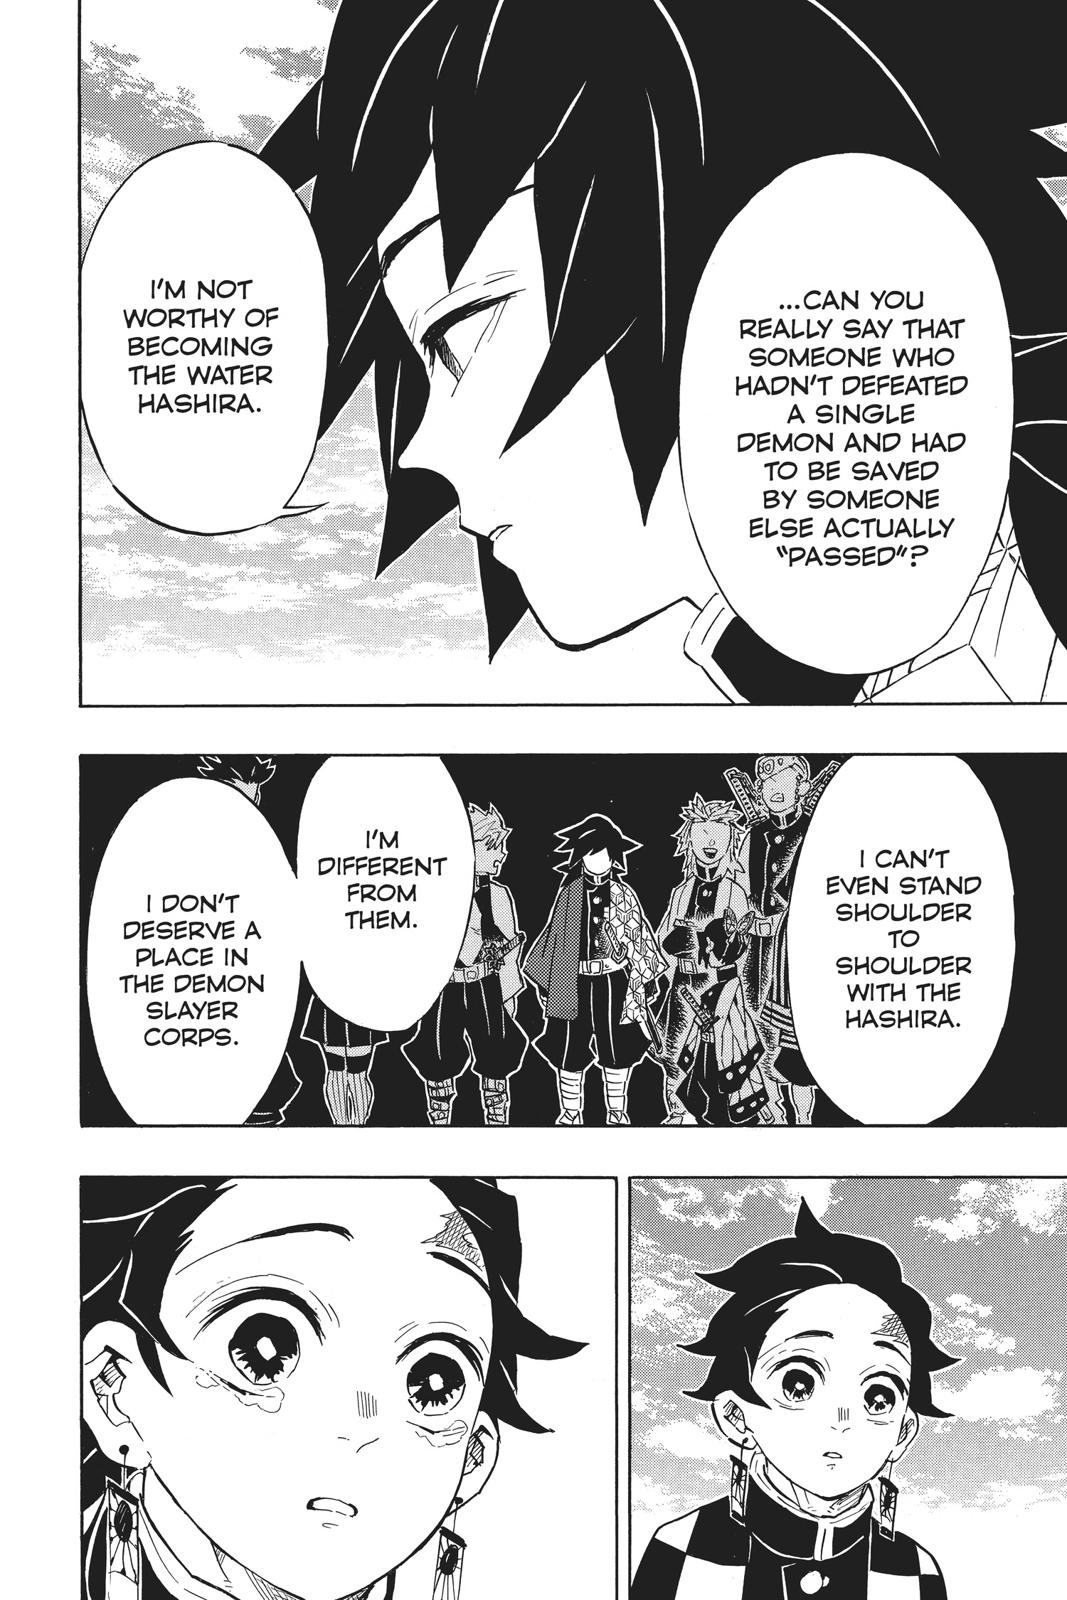 Demon Slayer Manga Manga Chapter - 130 - image 16